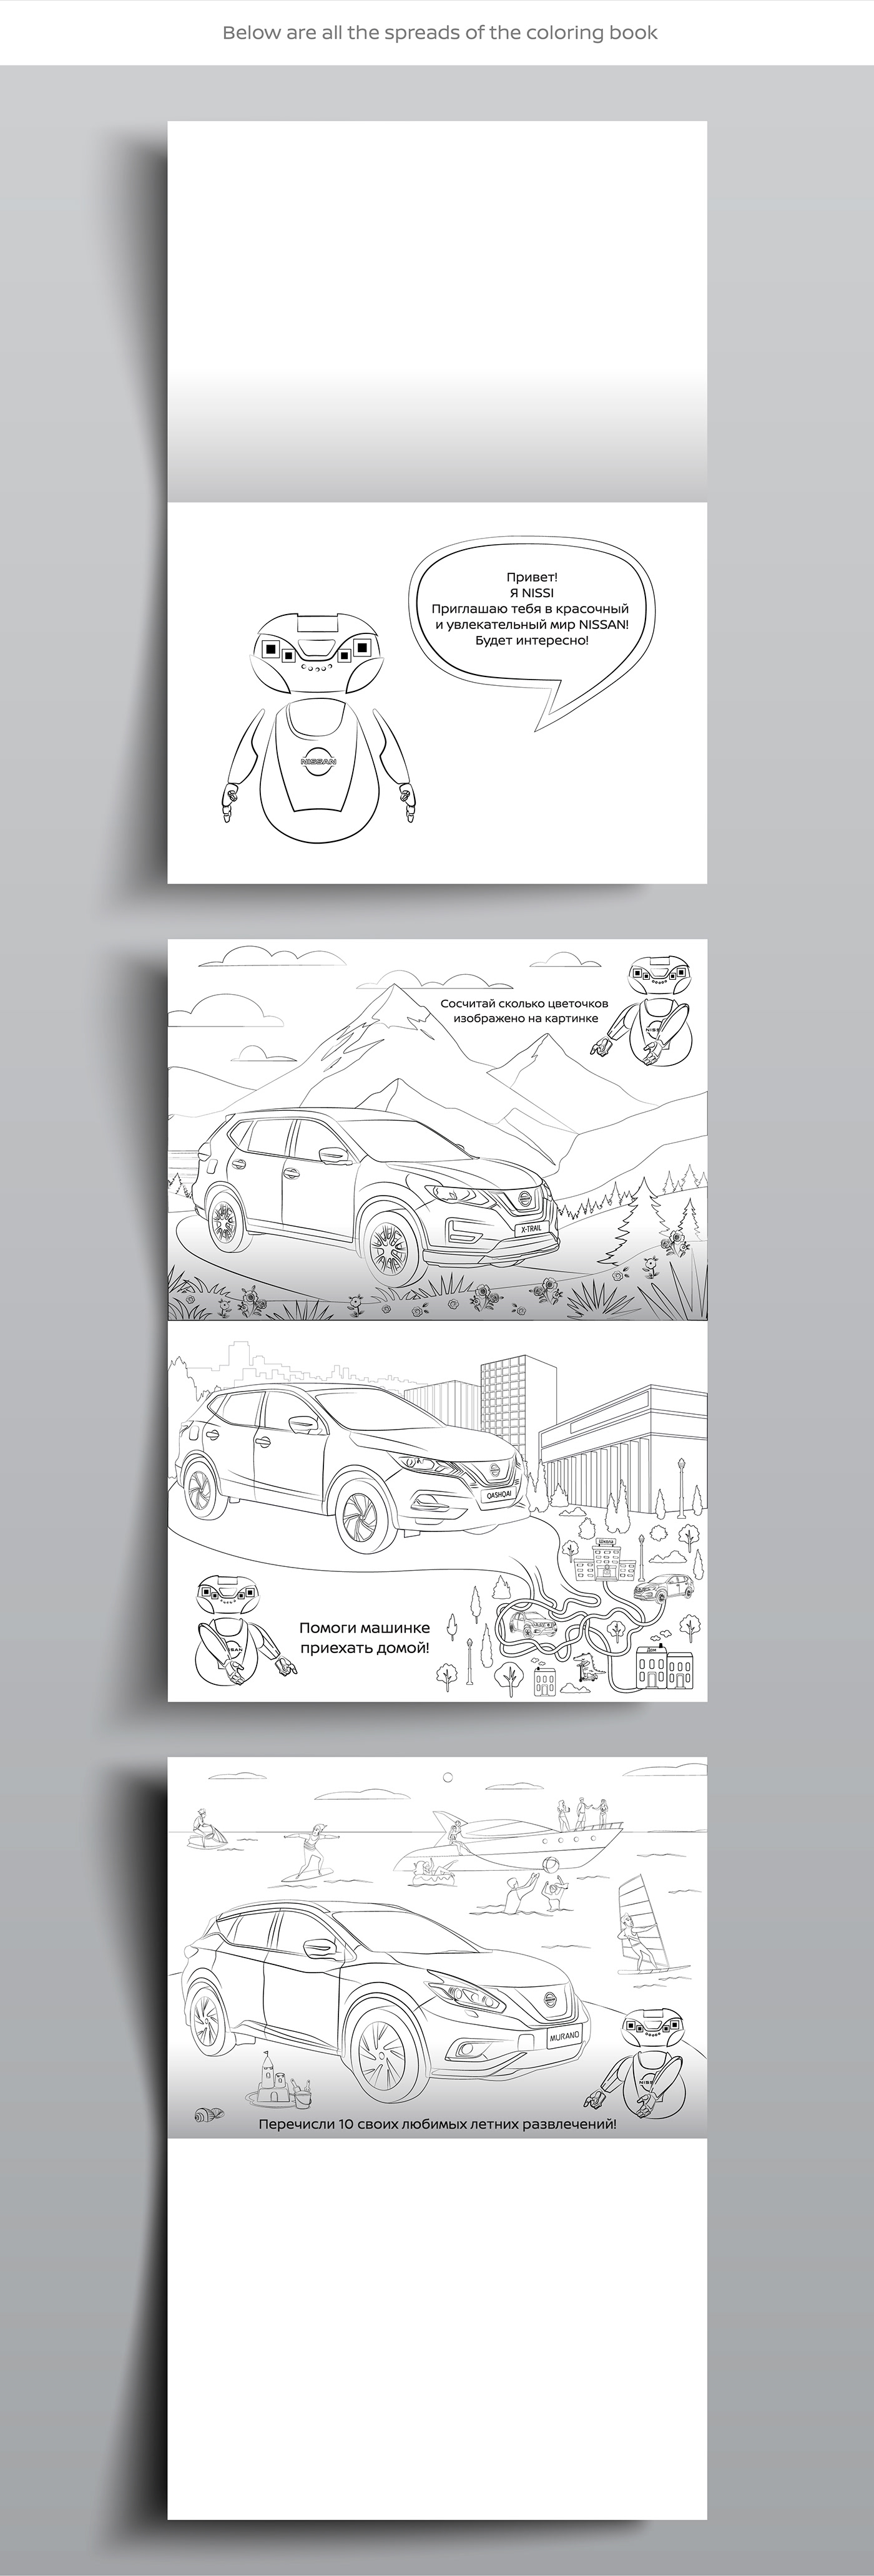 adobe illustrator artwork car children coloring book Coloring Book For Kids Drawing  ILLUSTRATION  vector